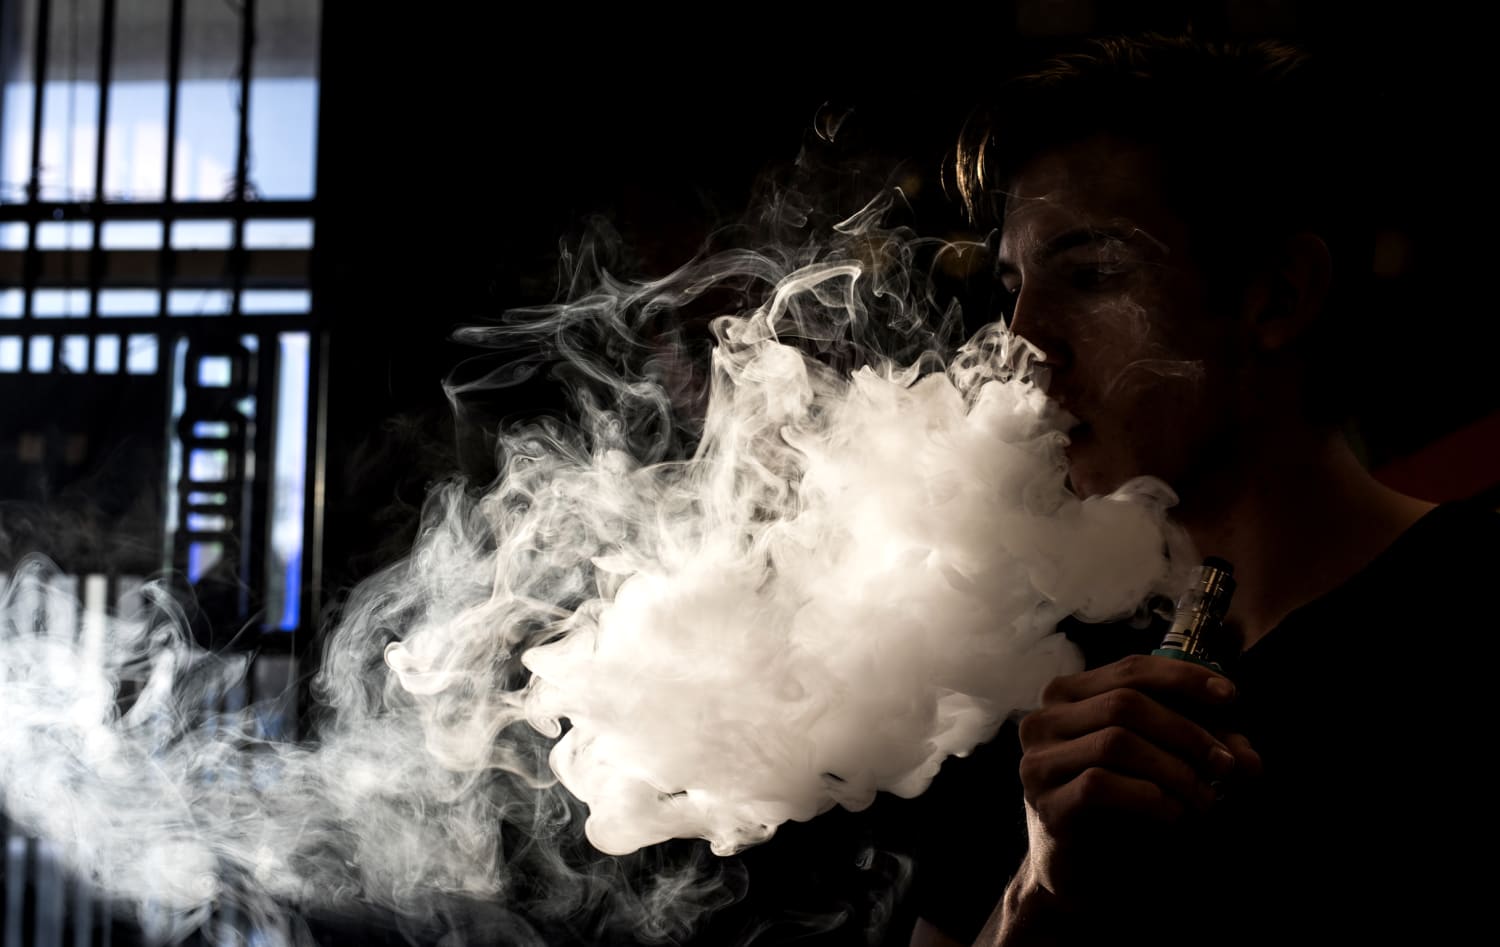 Француз дым. Дым электронных сигарет. Человек с электронной сигаретой. Электронные сигареты дим. Много дыма.